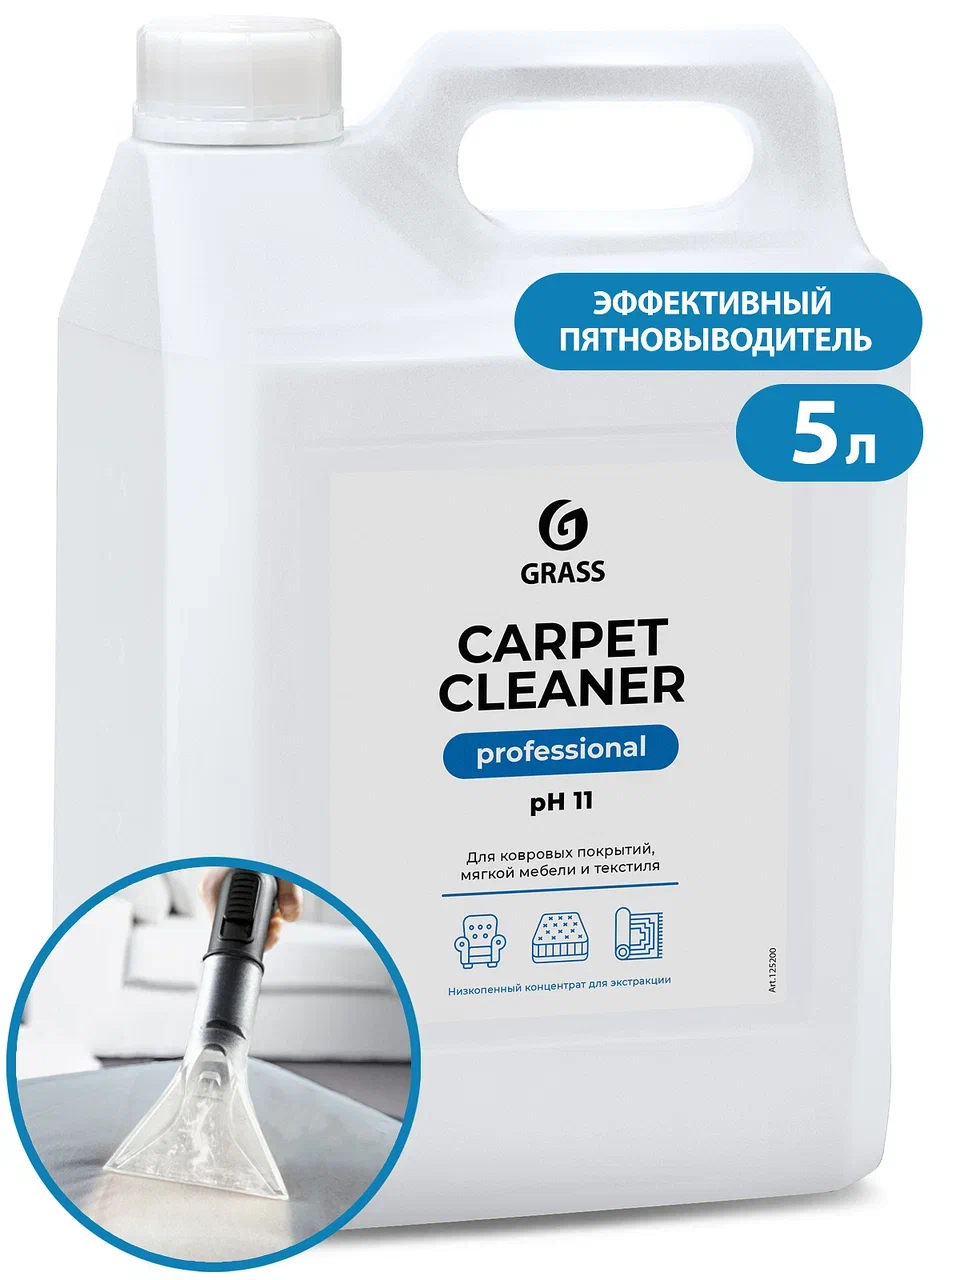 «Carpet Cleaner» (пятновыводитель), 5,4 кг